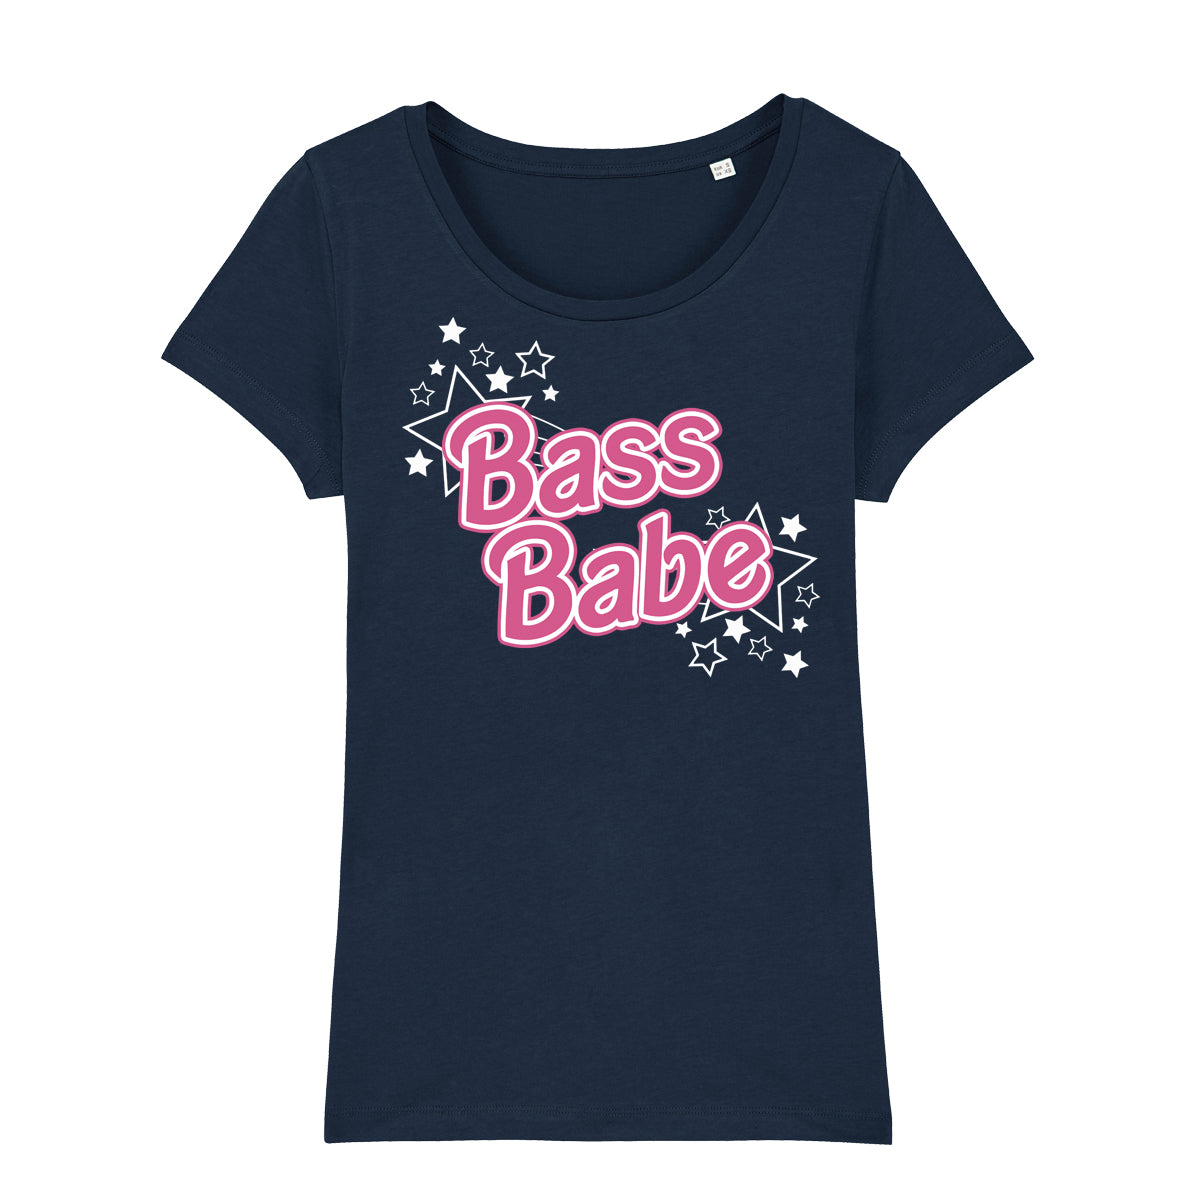 Bass Babe Women's T-Shirt